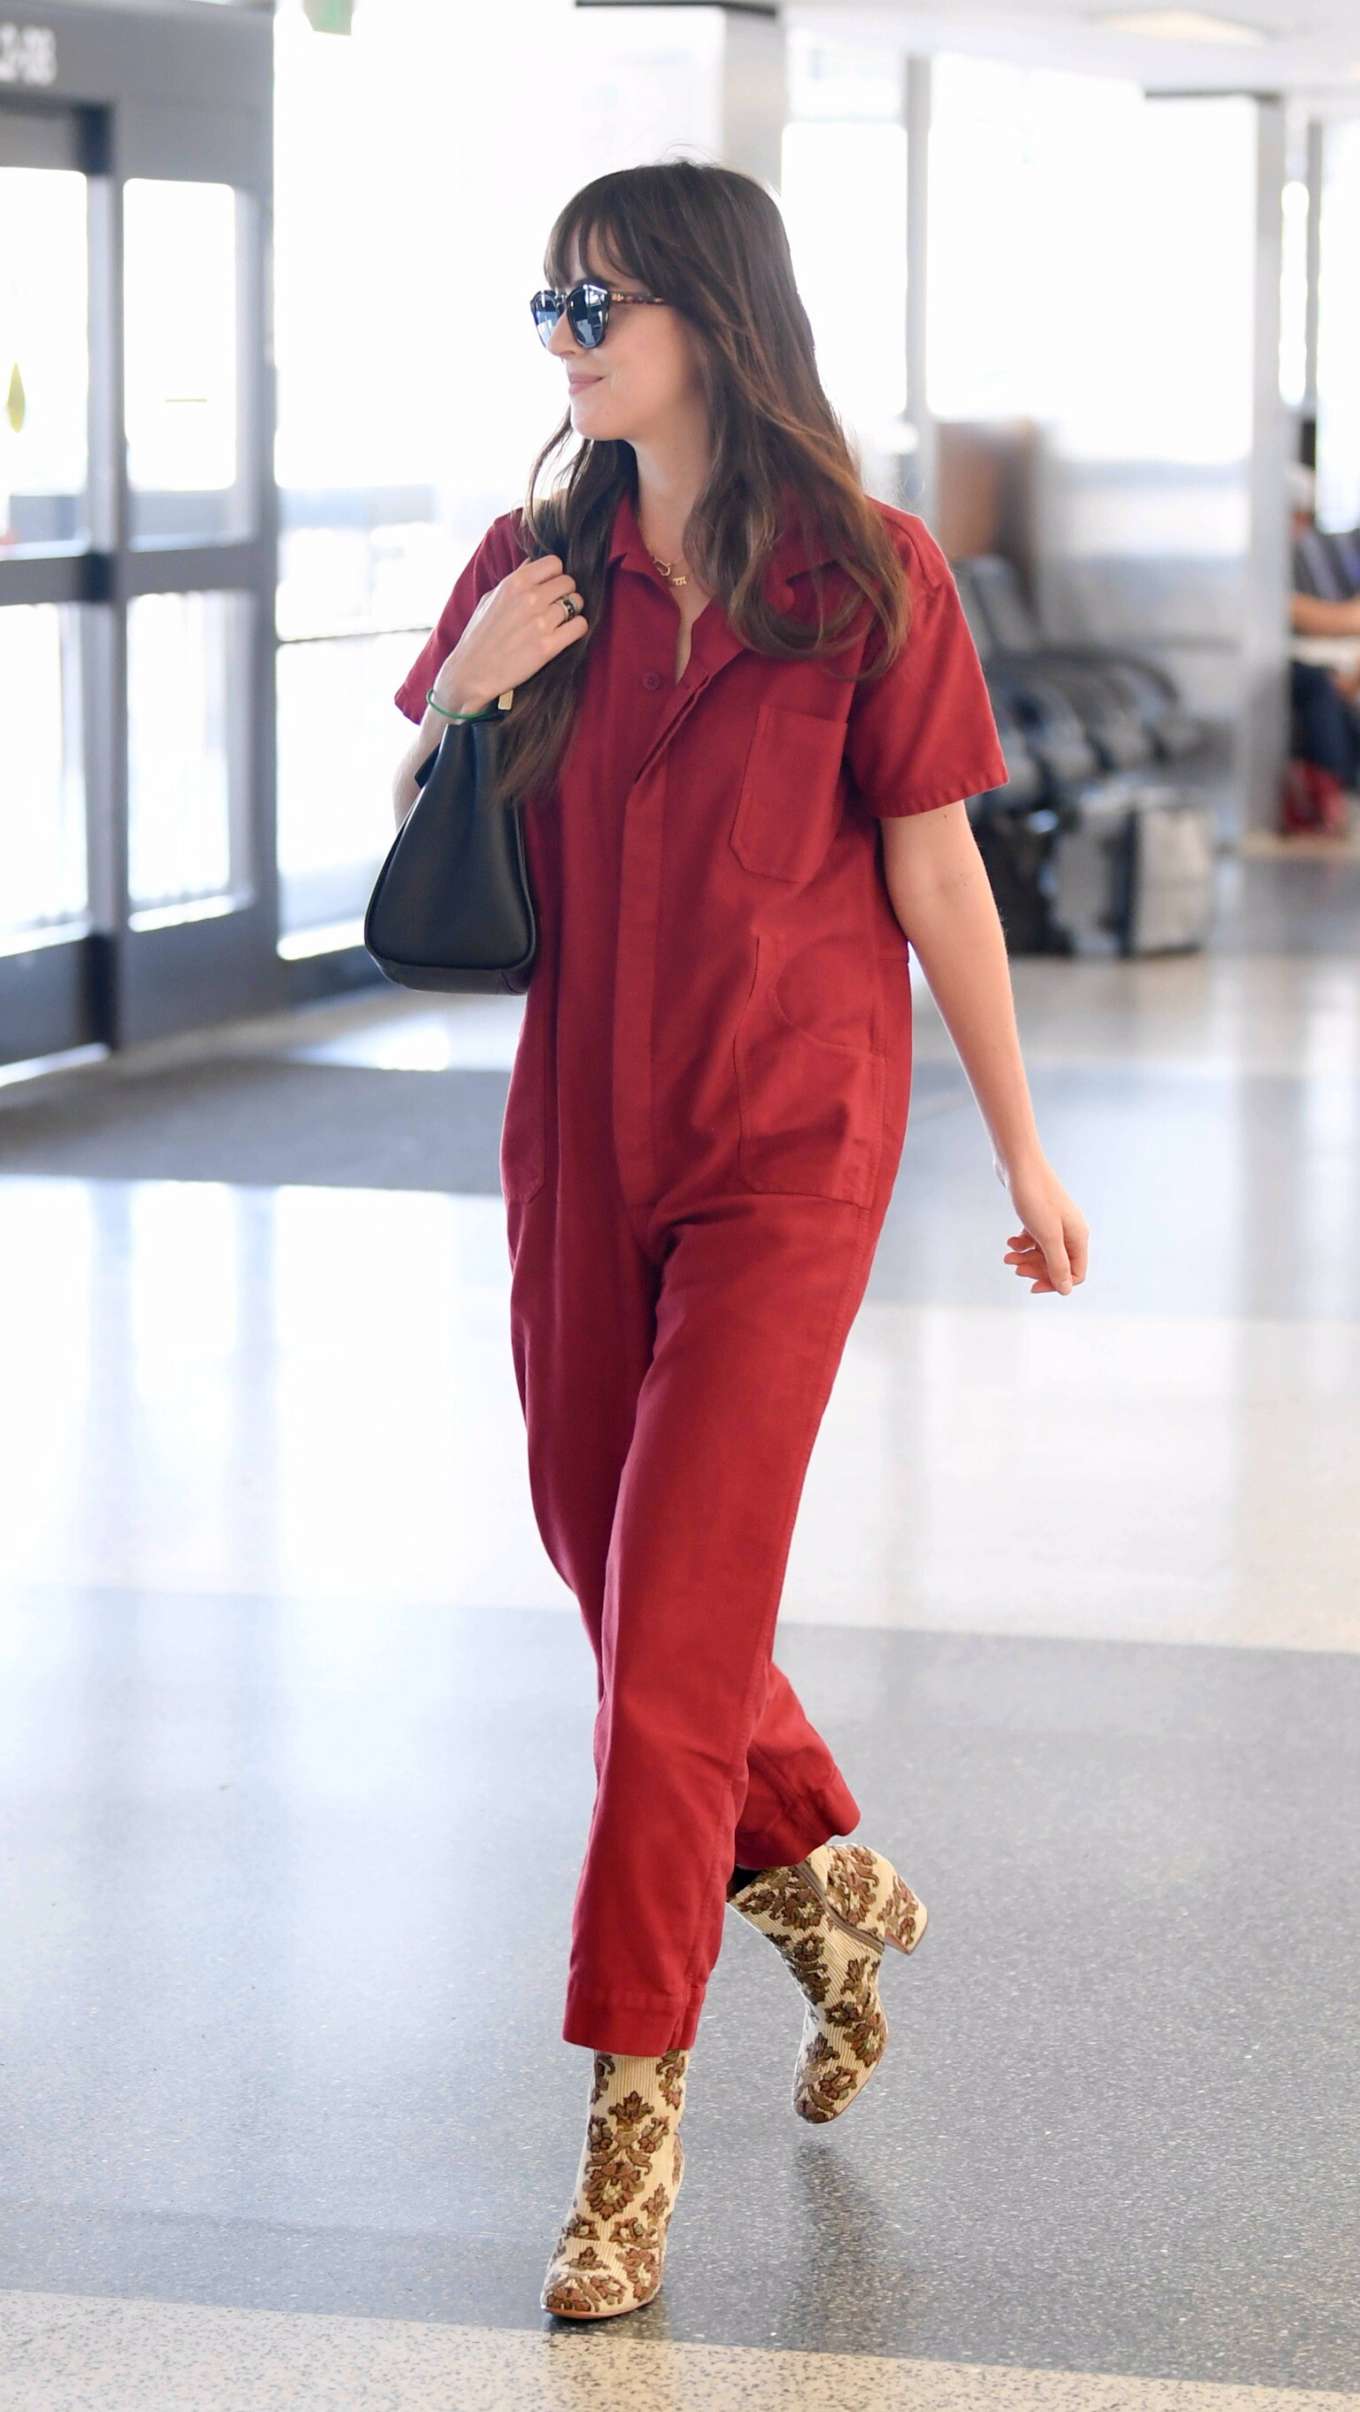 Dakota Johnson 2019 : Dakota Johnson in Red Jumpsuit-09